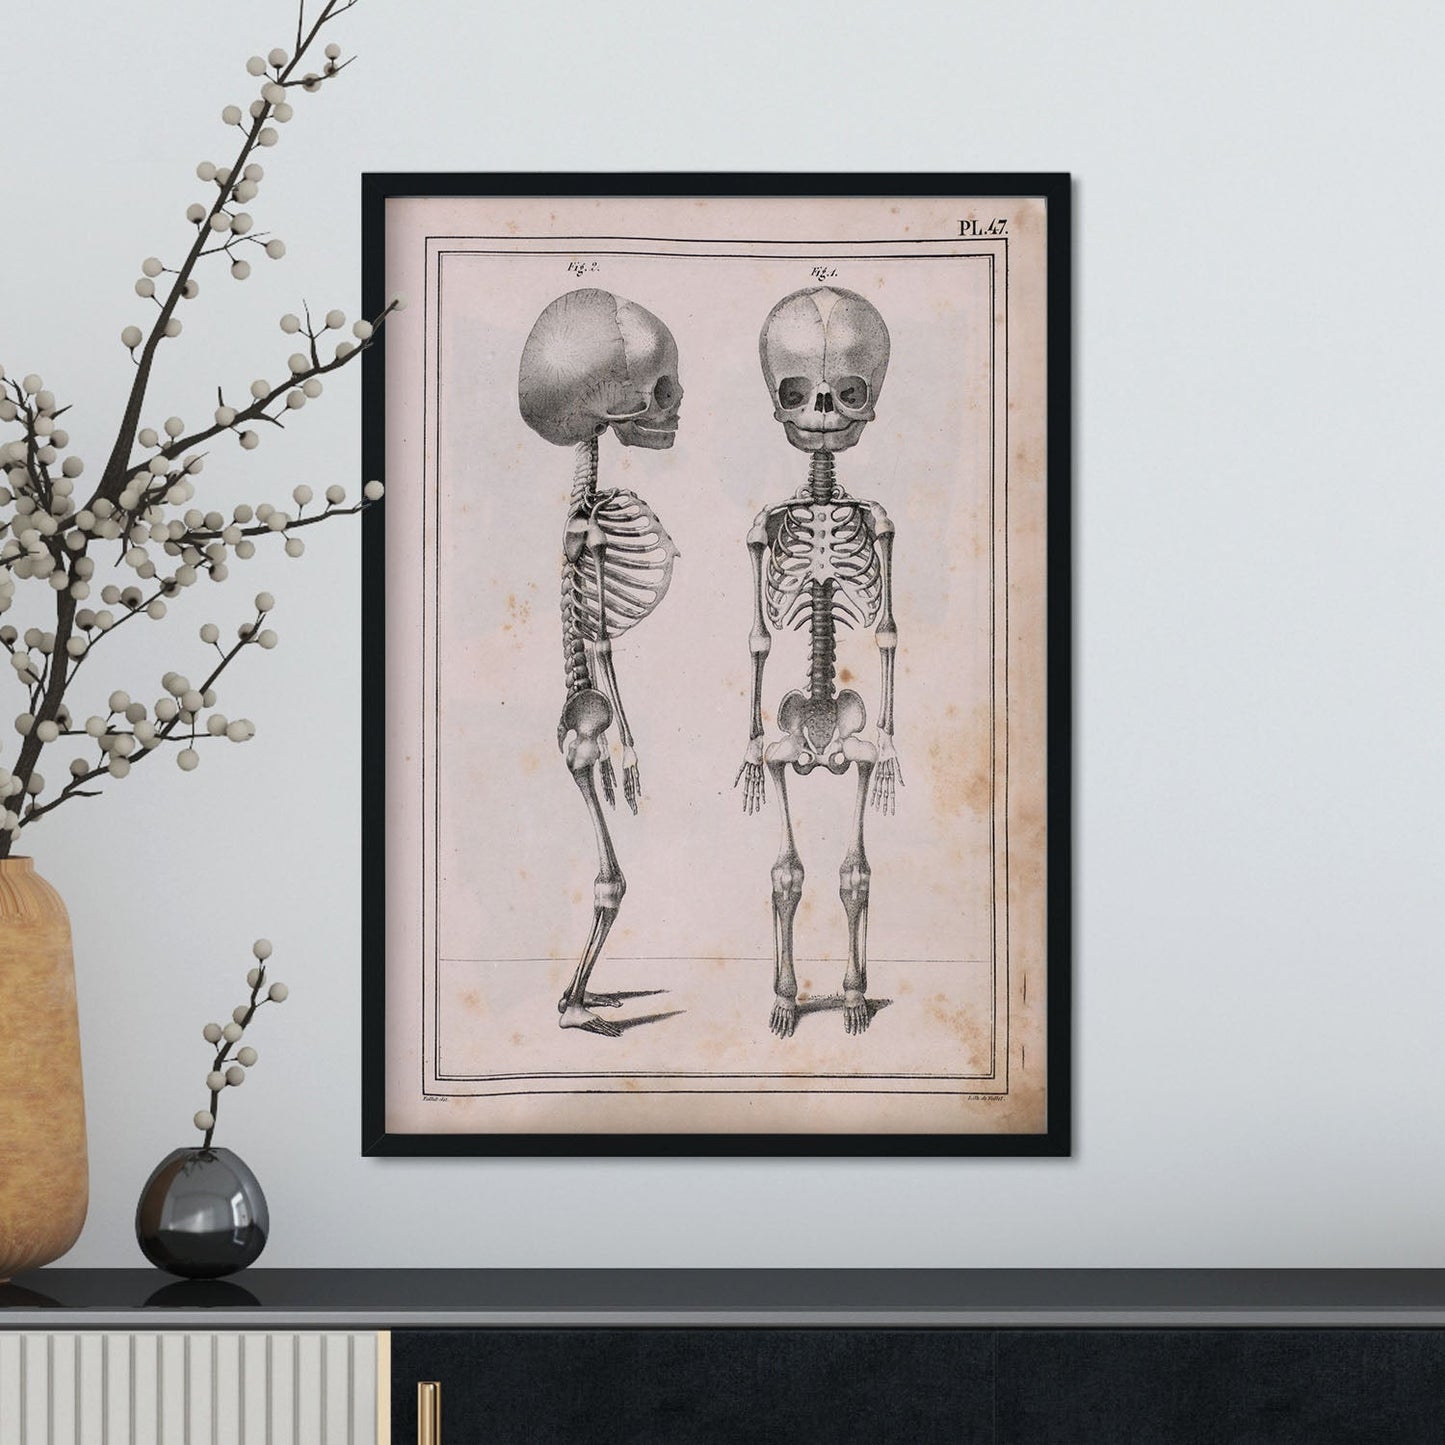 Paillou Fetal skeleton-Artwork-Nacnic-Nacnic Estudio SL